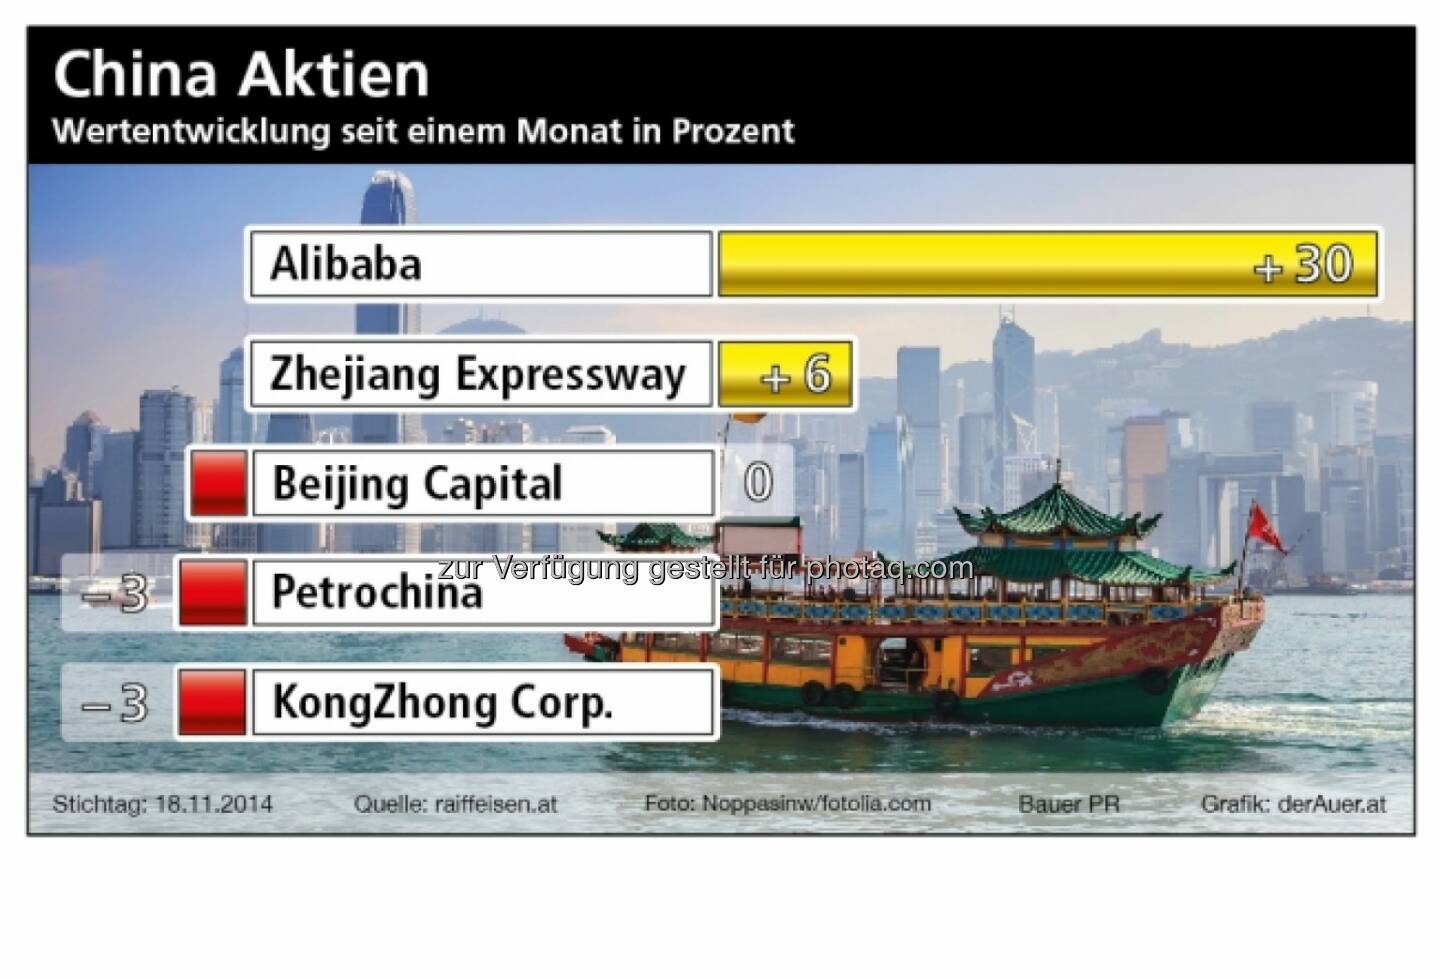 China Aktien: Alibaba, Zhejiang, Beijing Capital, Petrochina, KongZhong (Bauer PR, derAuer.at)